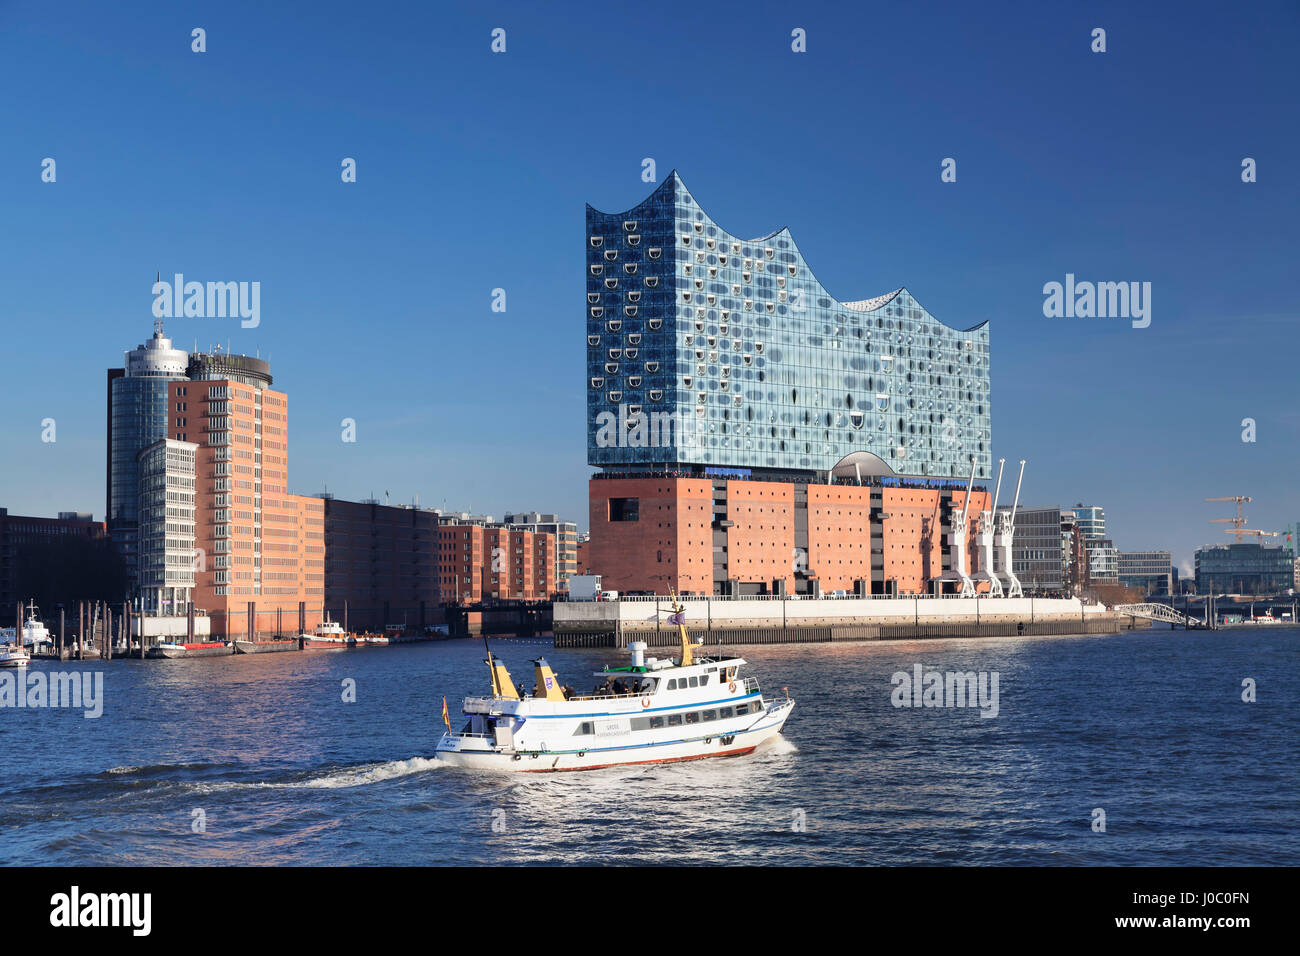 Bateau d'excursion sur le fleuve Elbe, Elbphilharmonie, HafenCity, Hambourg, Hambourg, Allemagne Banque D'Images